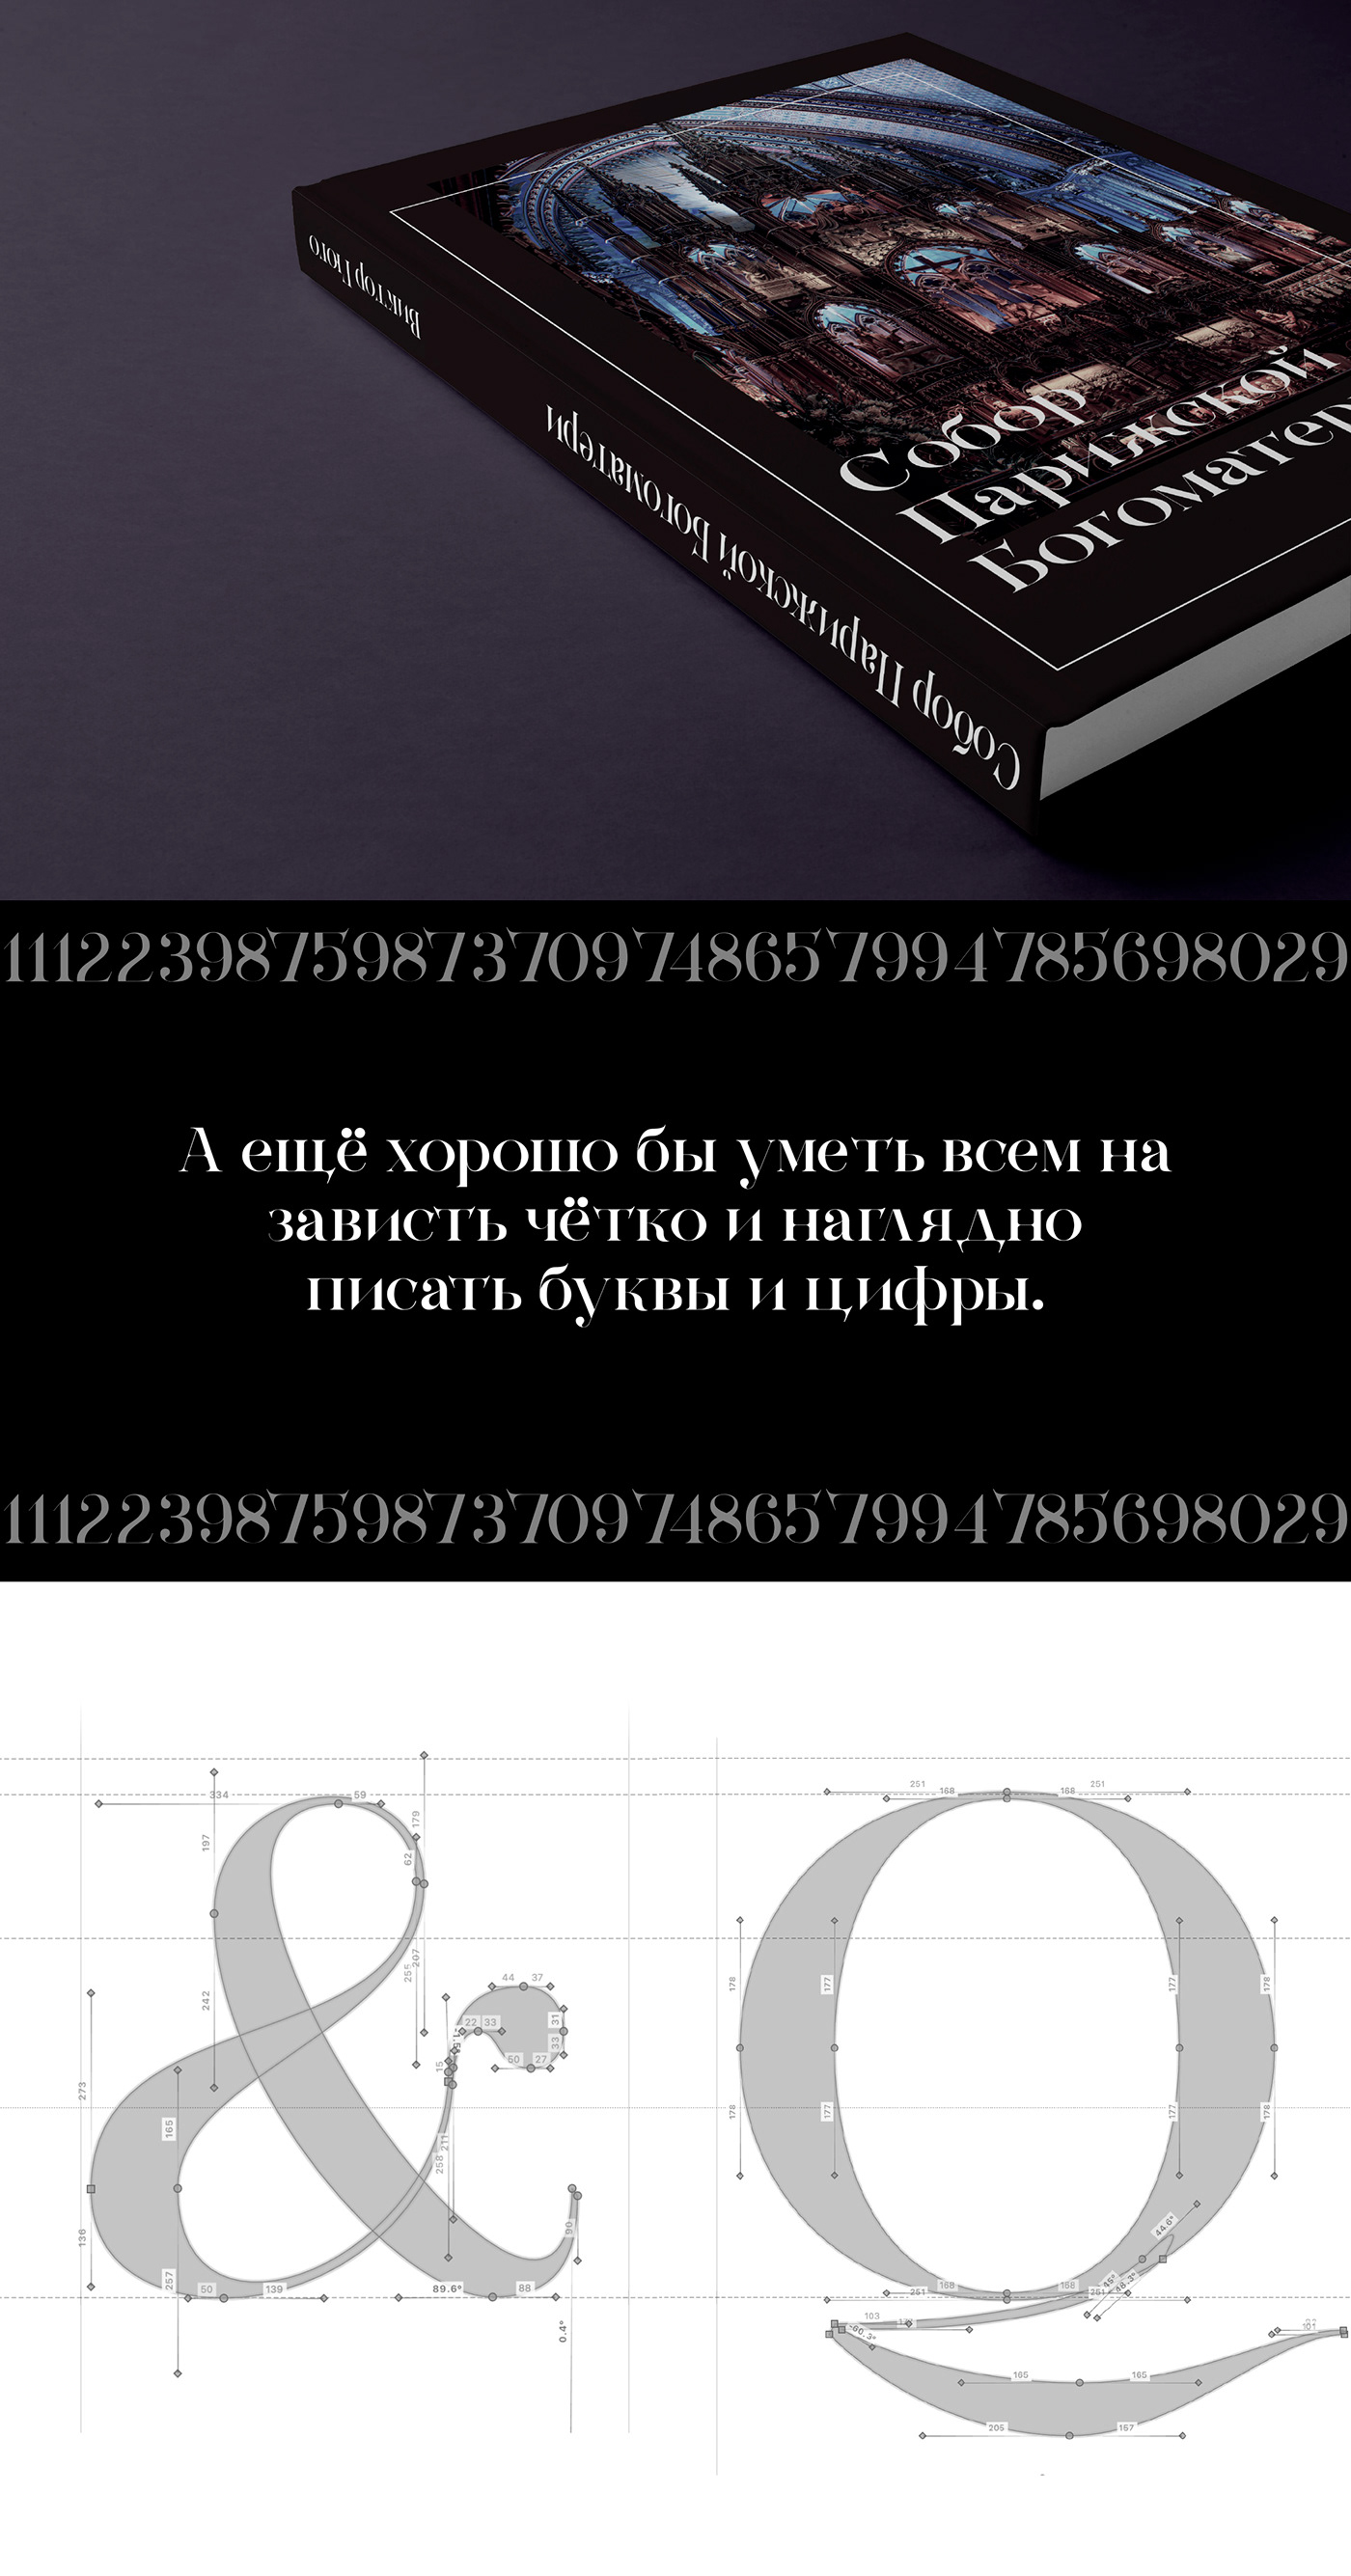 Cyrillic elegant font freefont freetypeface luxury modern Typeface typography  